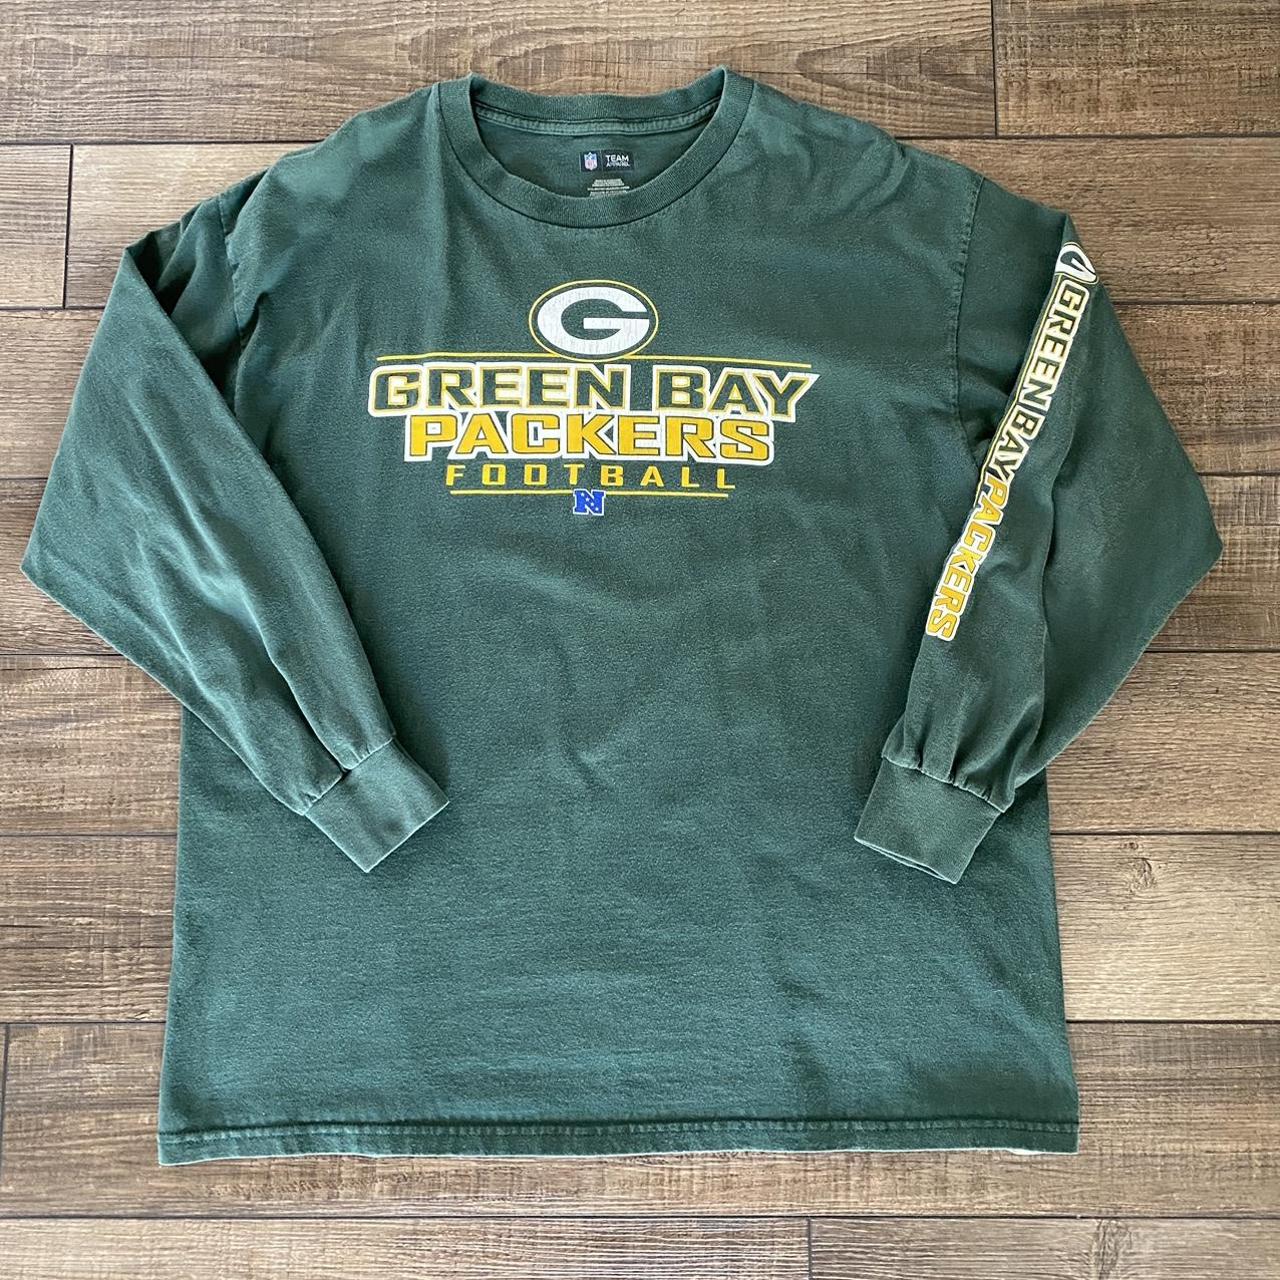 Green Bay Packers NFL Team Apparel Long Sleeve Shirt - Depop